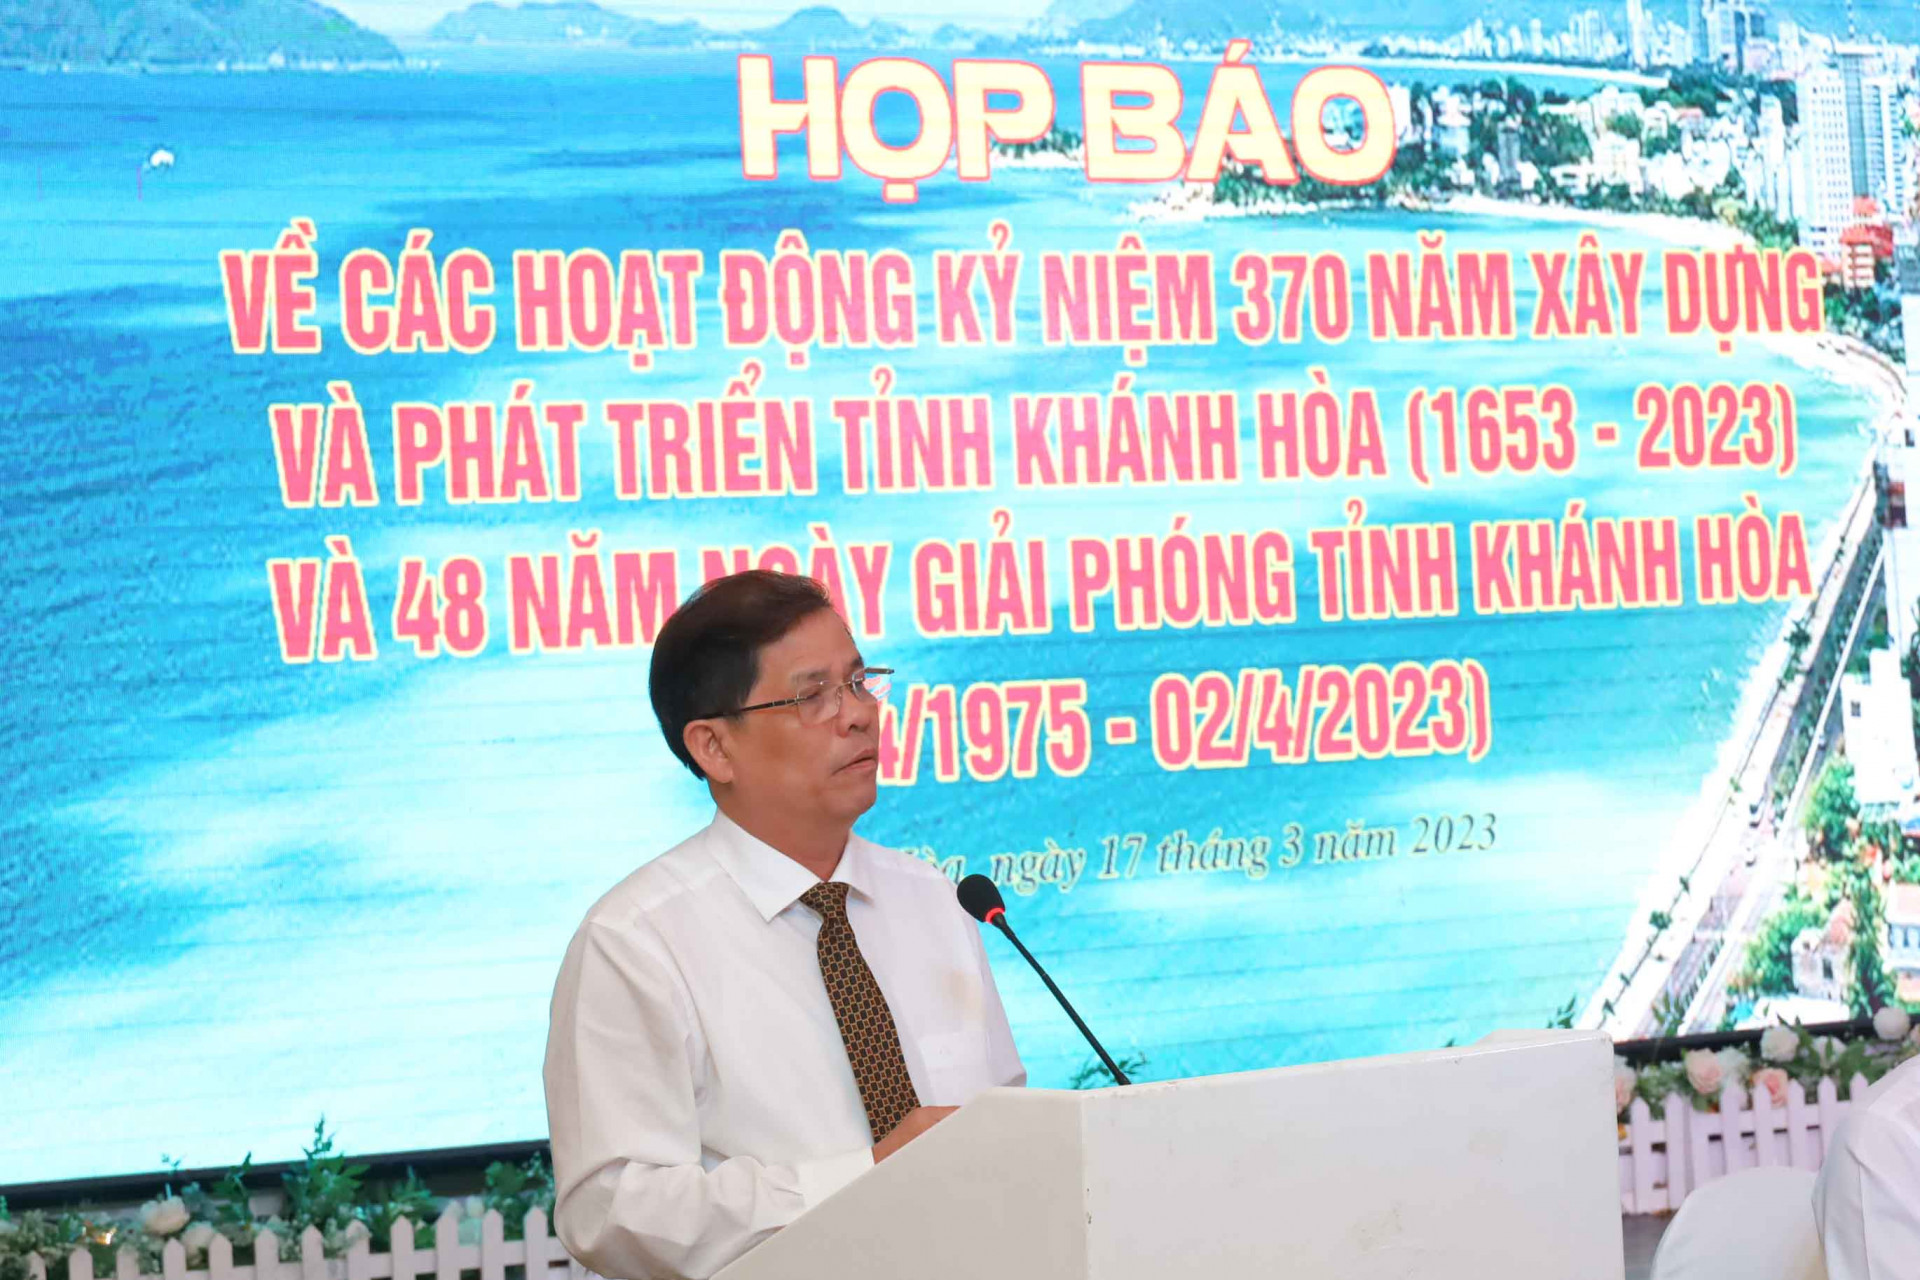 Ông Nguyễn Tấn Tuân chia sẻ về một số nội dung các phóng viên, nhà báo quan tâm tại buổi họp báo.